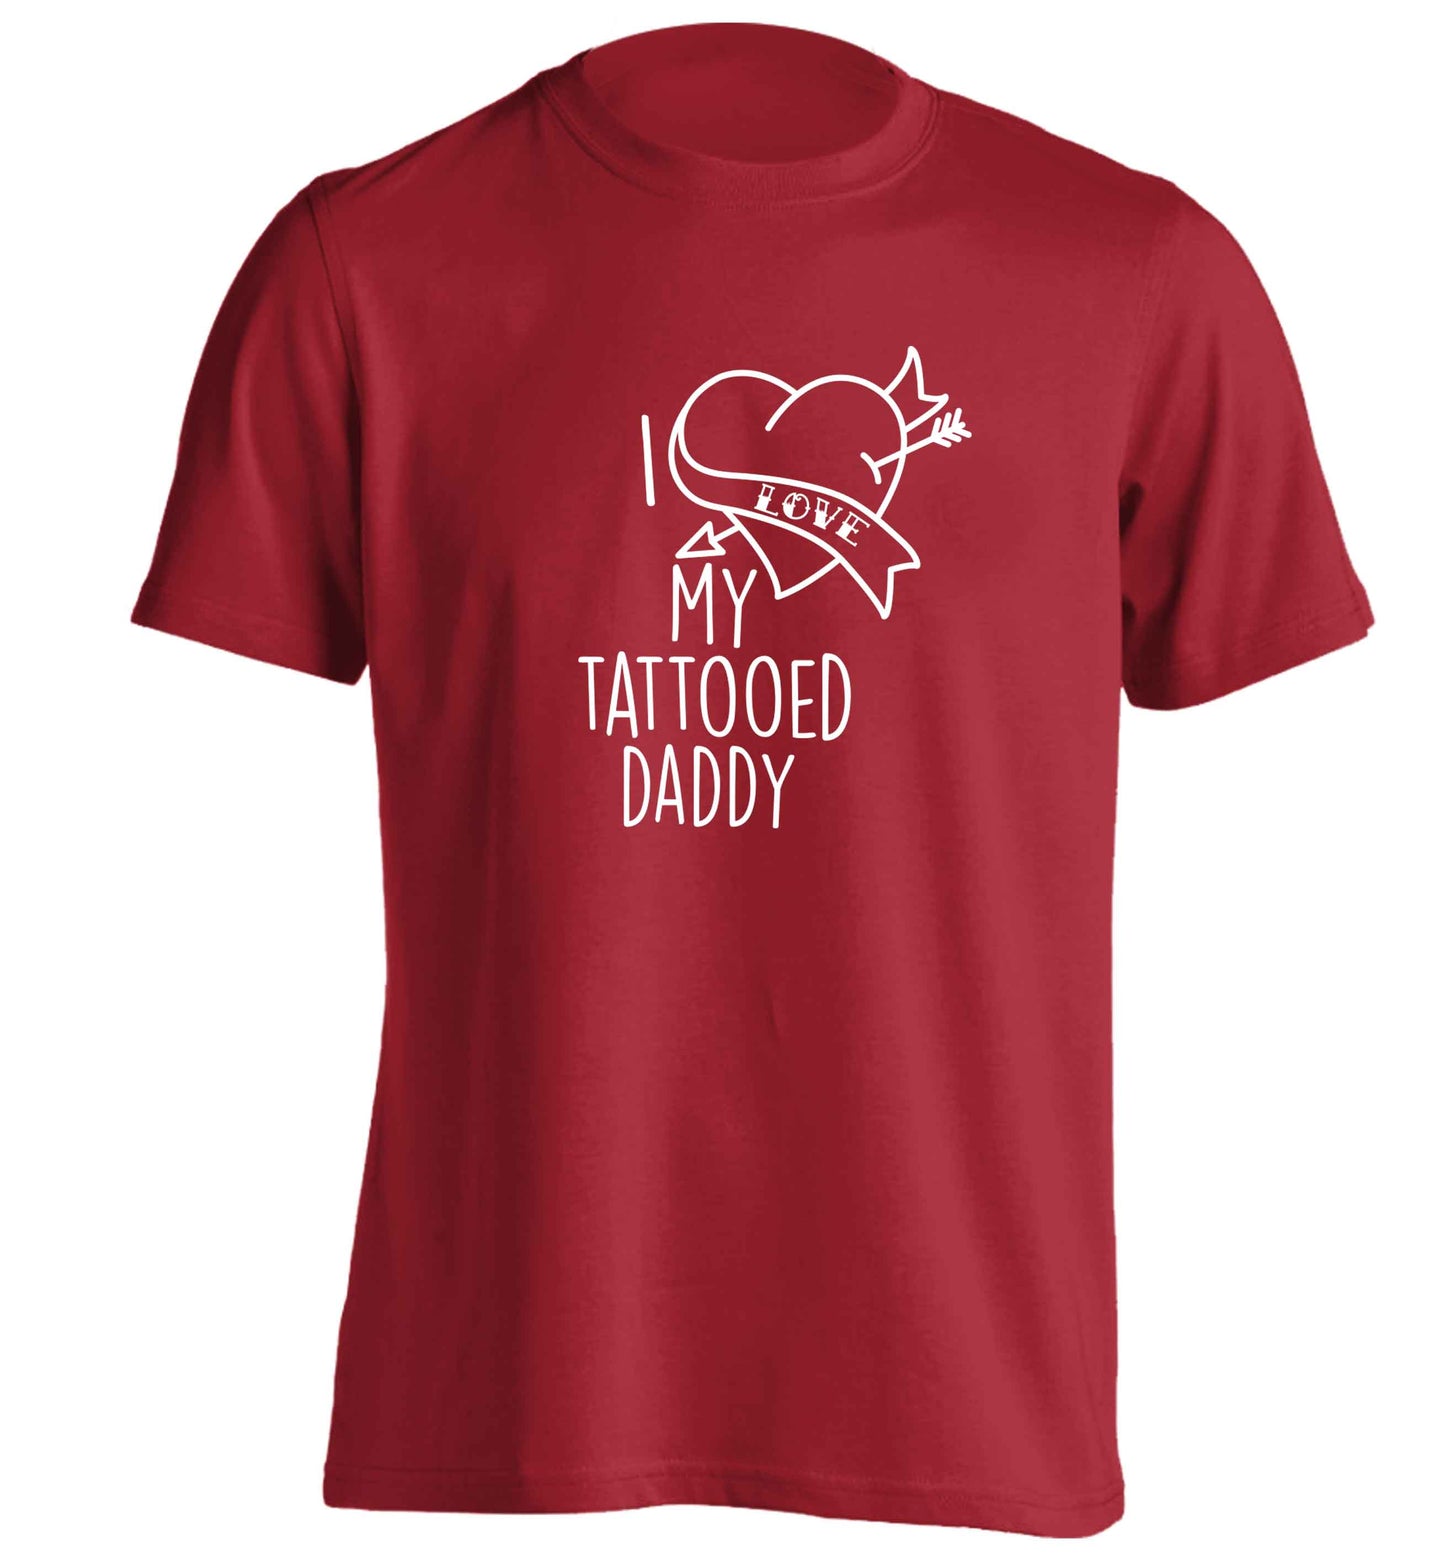 I love my tattooed daddy adults unisex red Tshirt 2XL